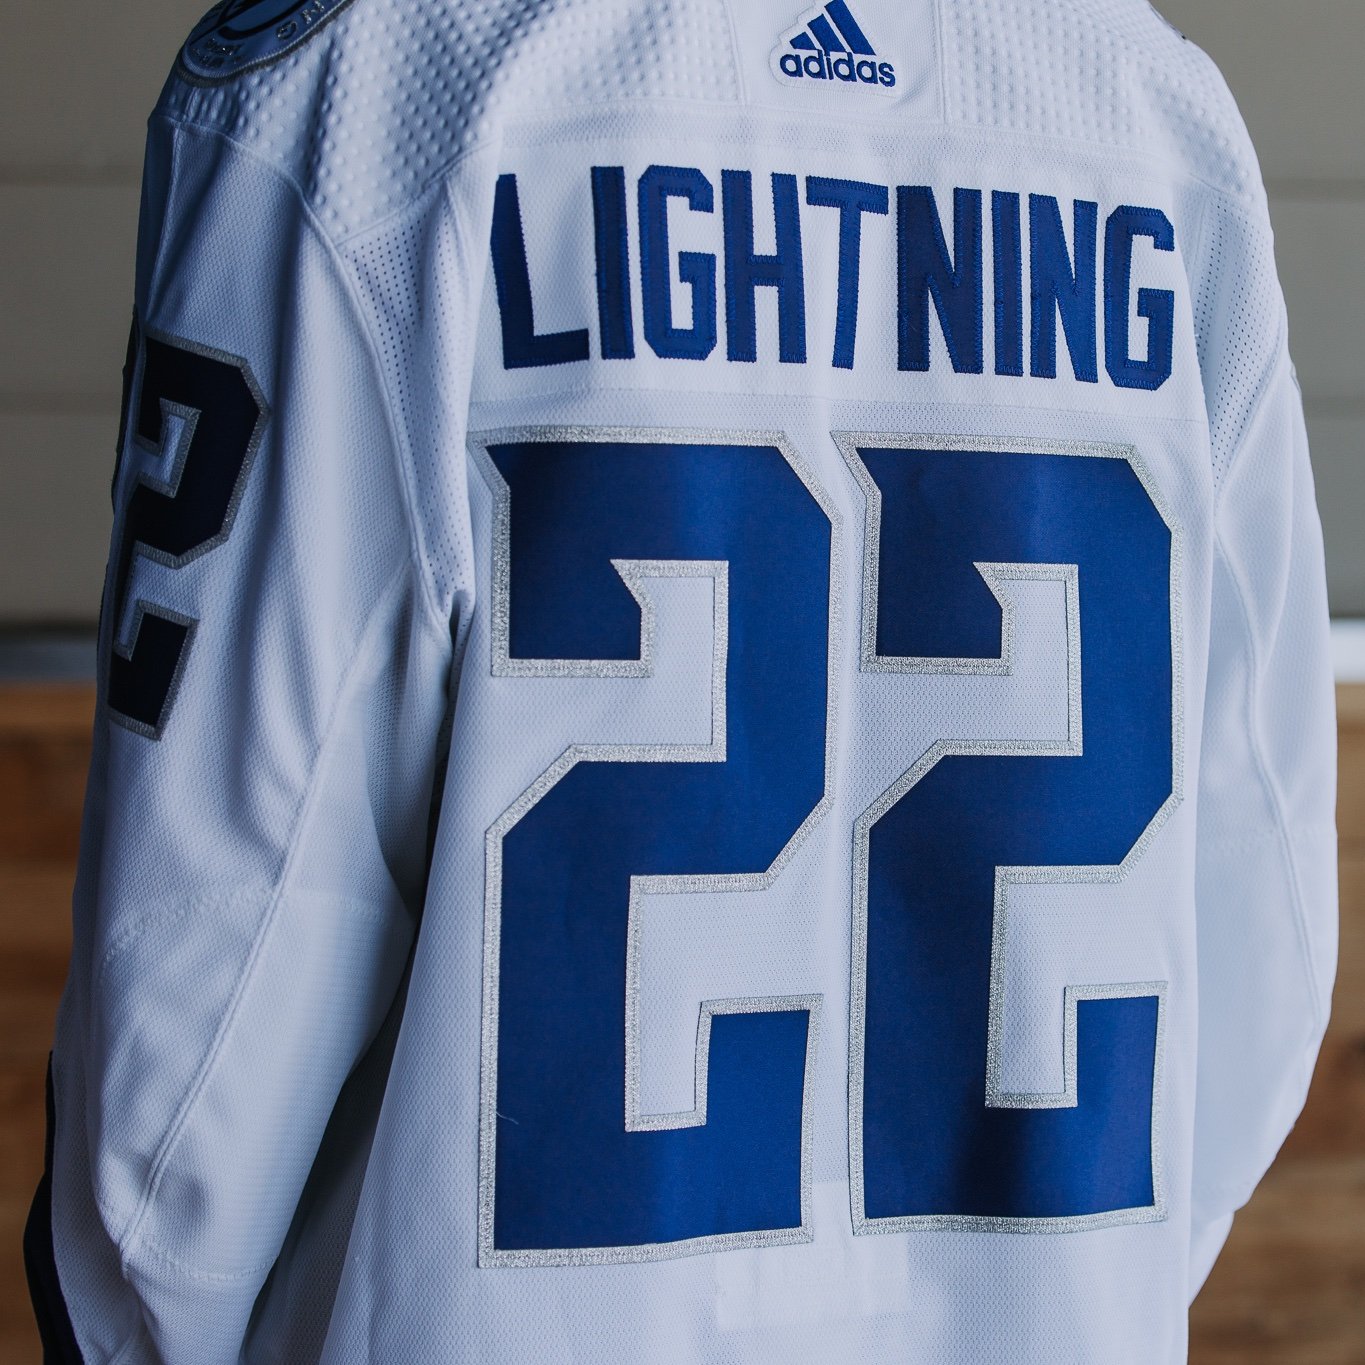 Tampa Bay Lightning Jerseys in Tampa Bay Lightning Team Shop 